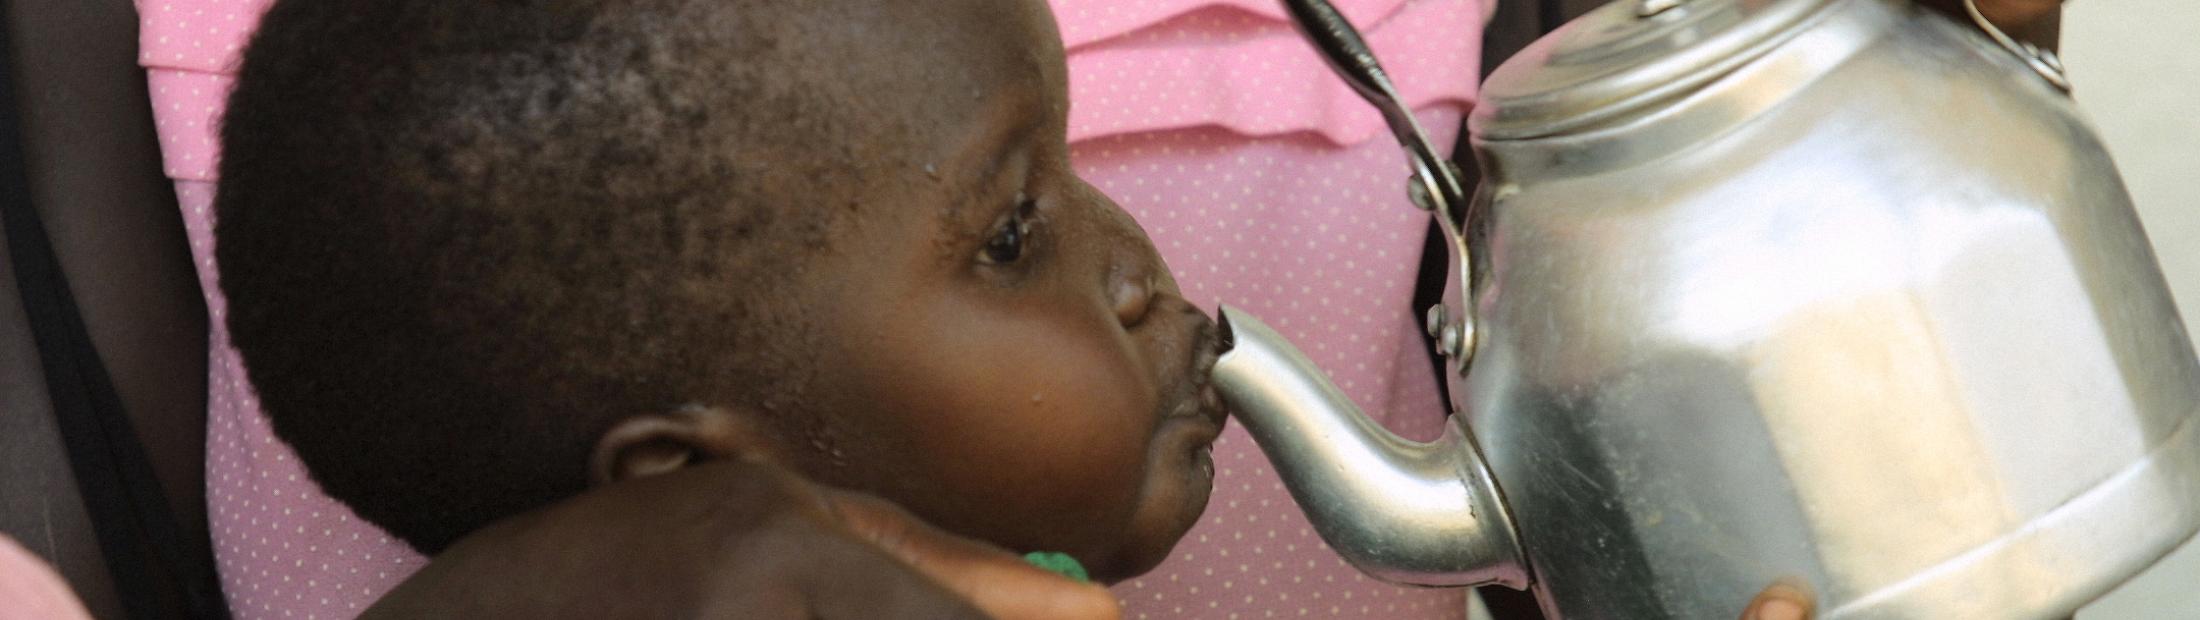 La Fundación Probitas ayuda a la nutrición de niños y embarazadas